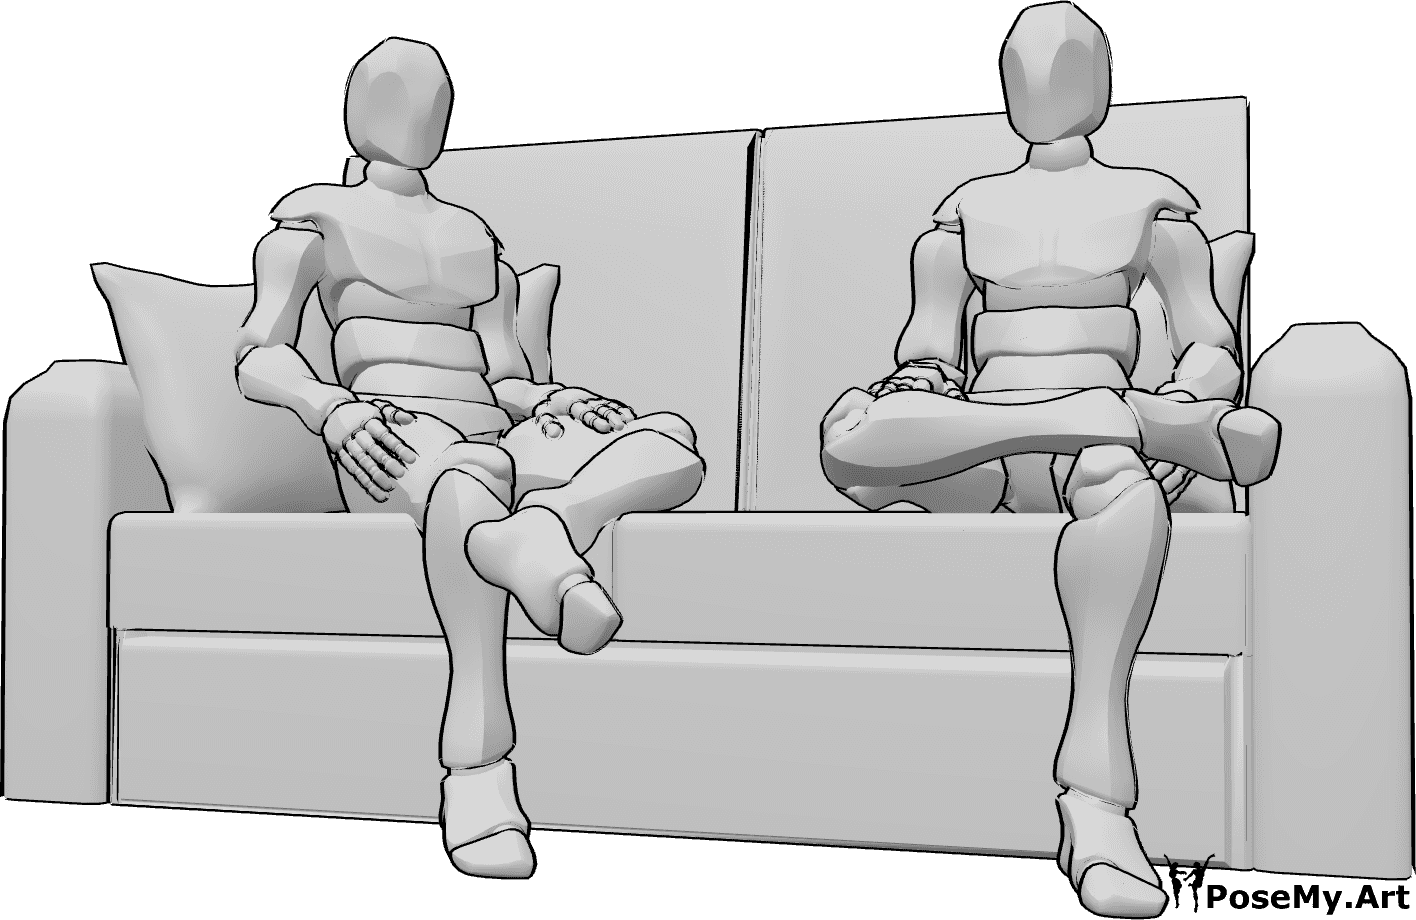 Référence des poses- Hommes en position assise - Deux hommes sont assis sur le canapé et regardent vers l'avant.